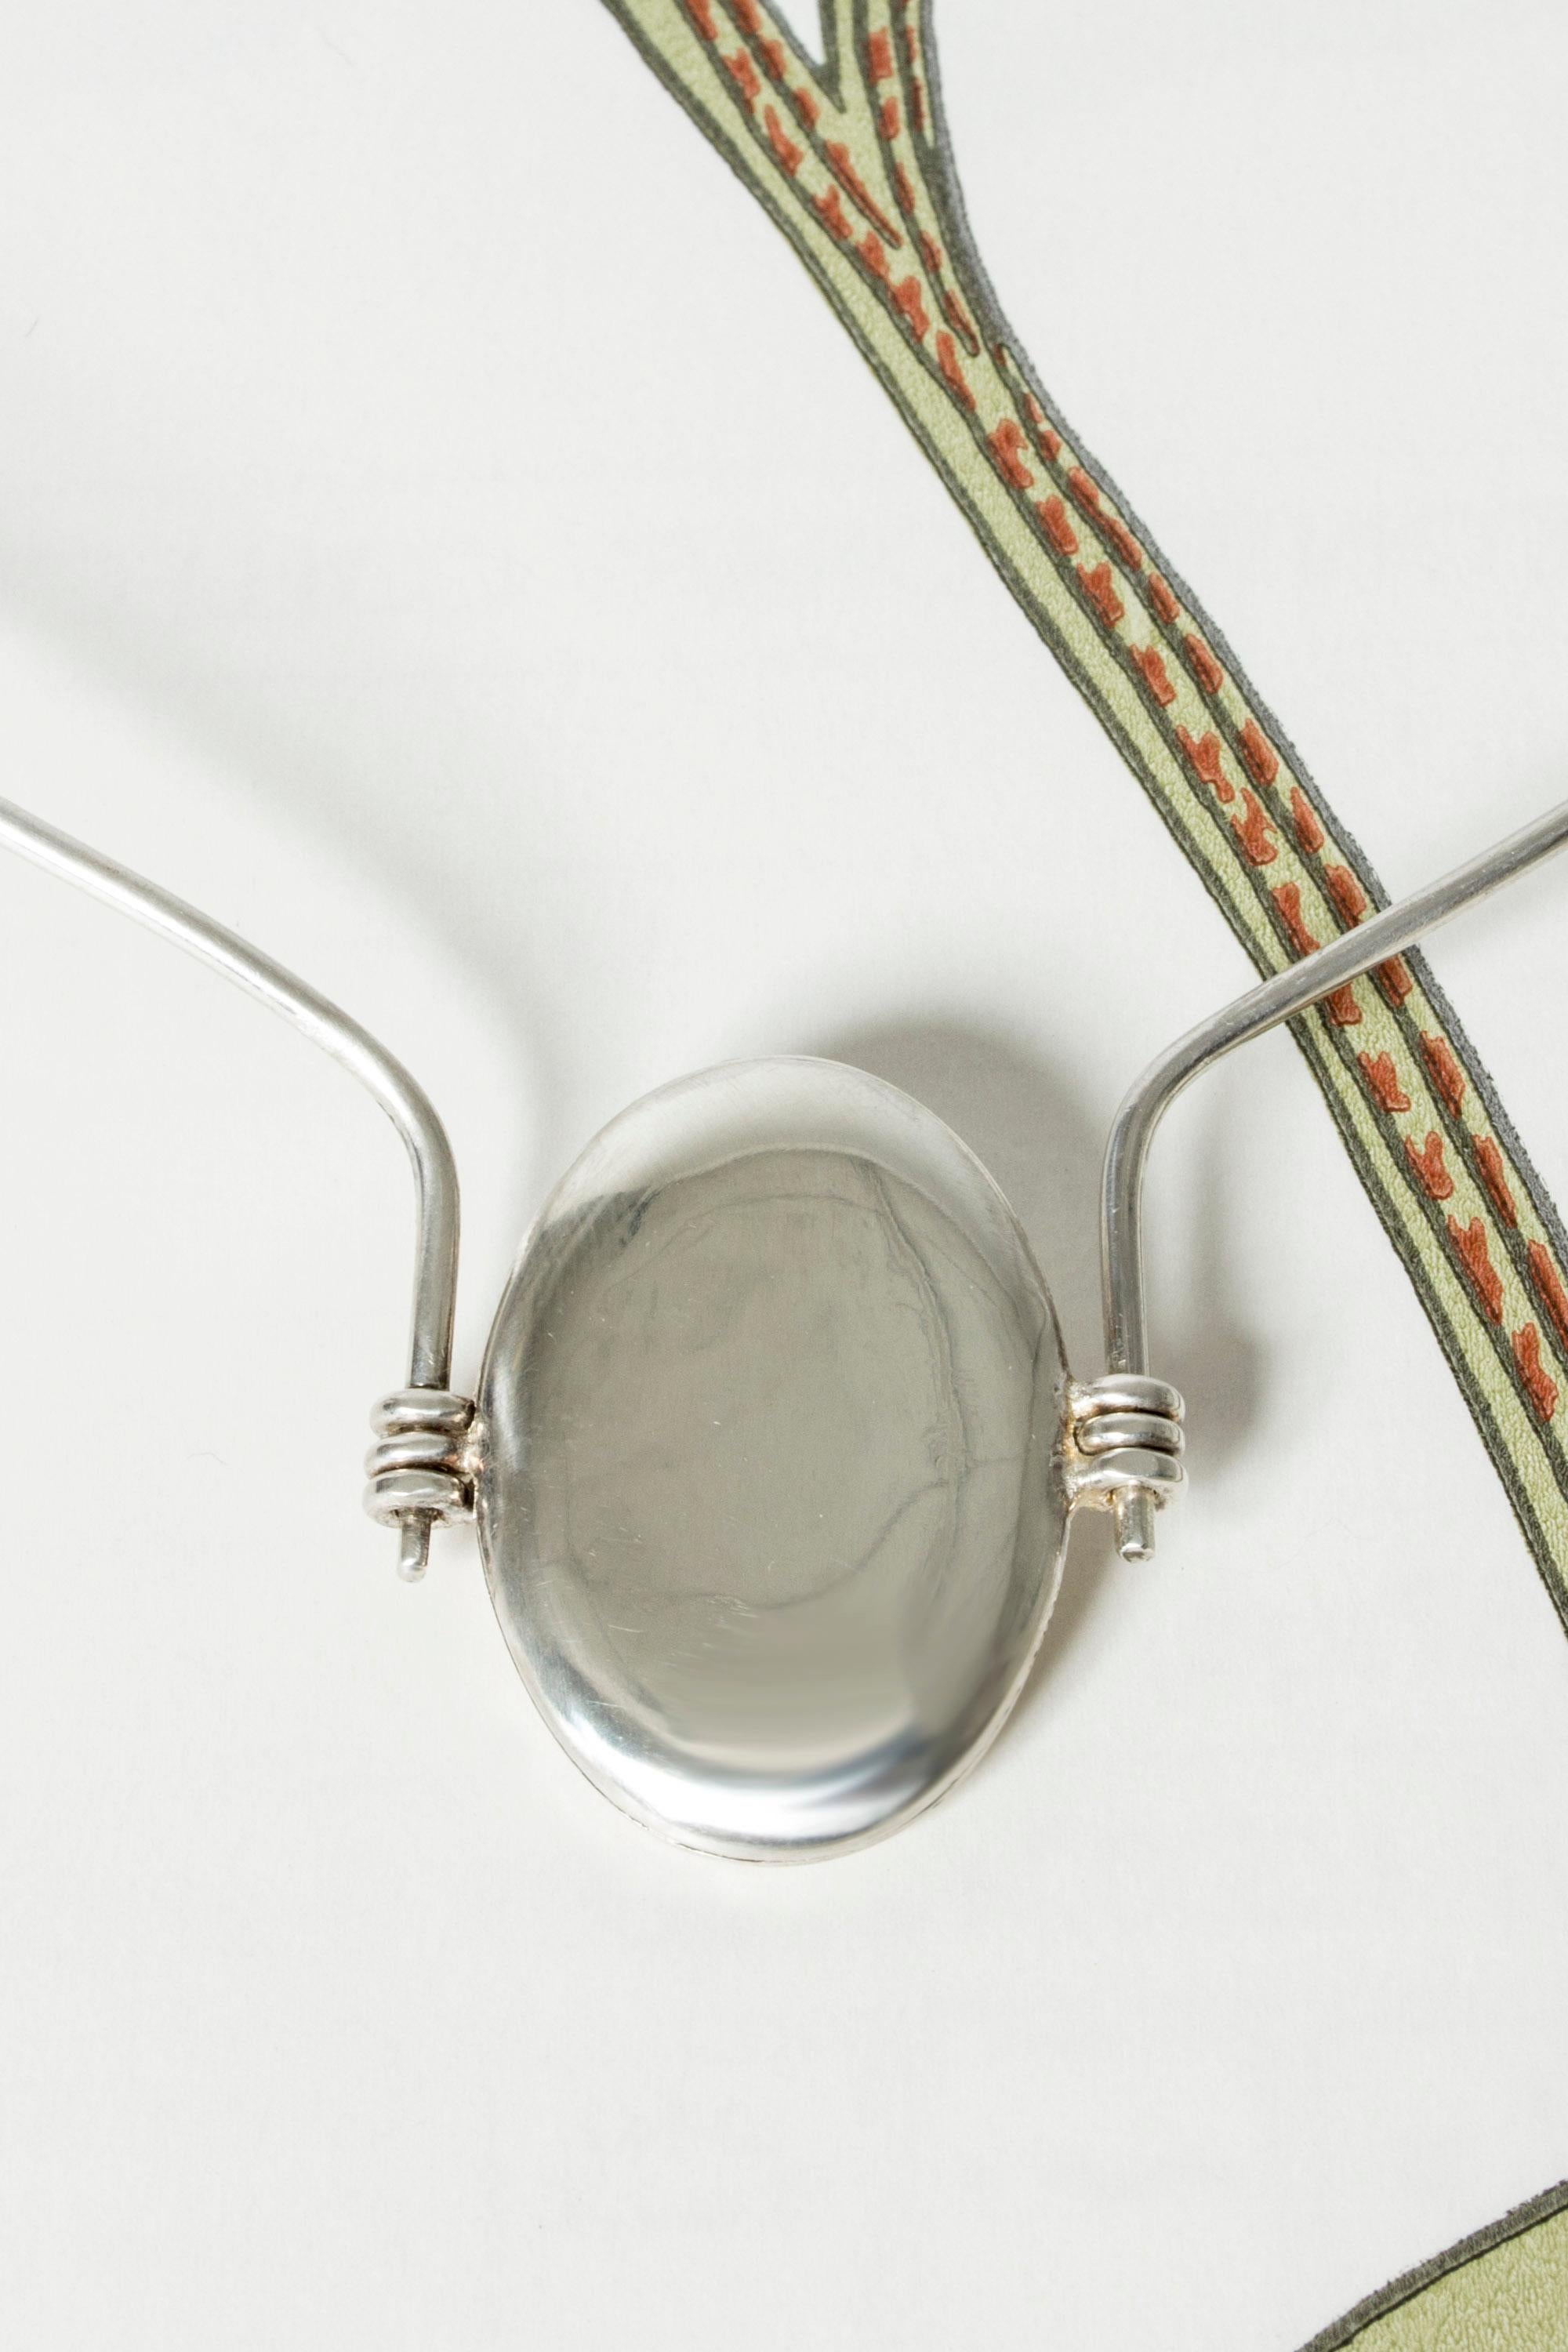 Modernist Silver Neckring with Locket by Pekka Piekäinen, Finland, 1976 For Sale